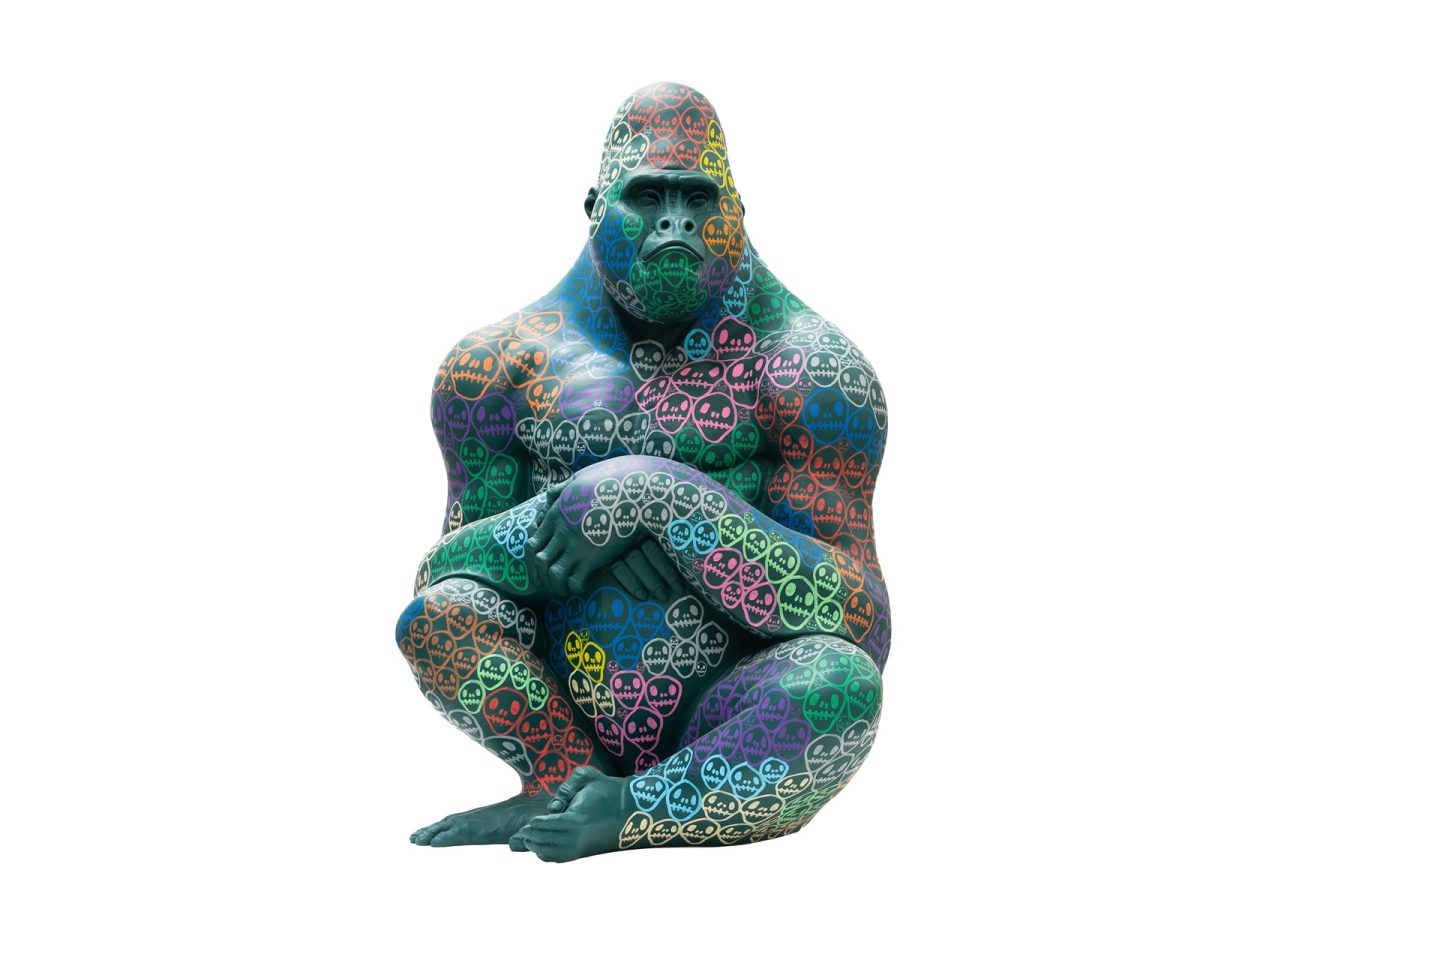 Hayden Kays x Petersham Nurseries – Homeless - Artist Sculpture - Tusk Gorilla Trail in Covent Garden 2023